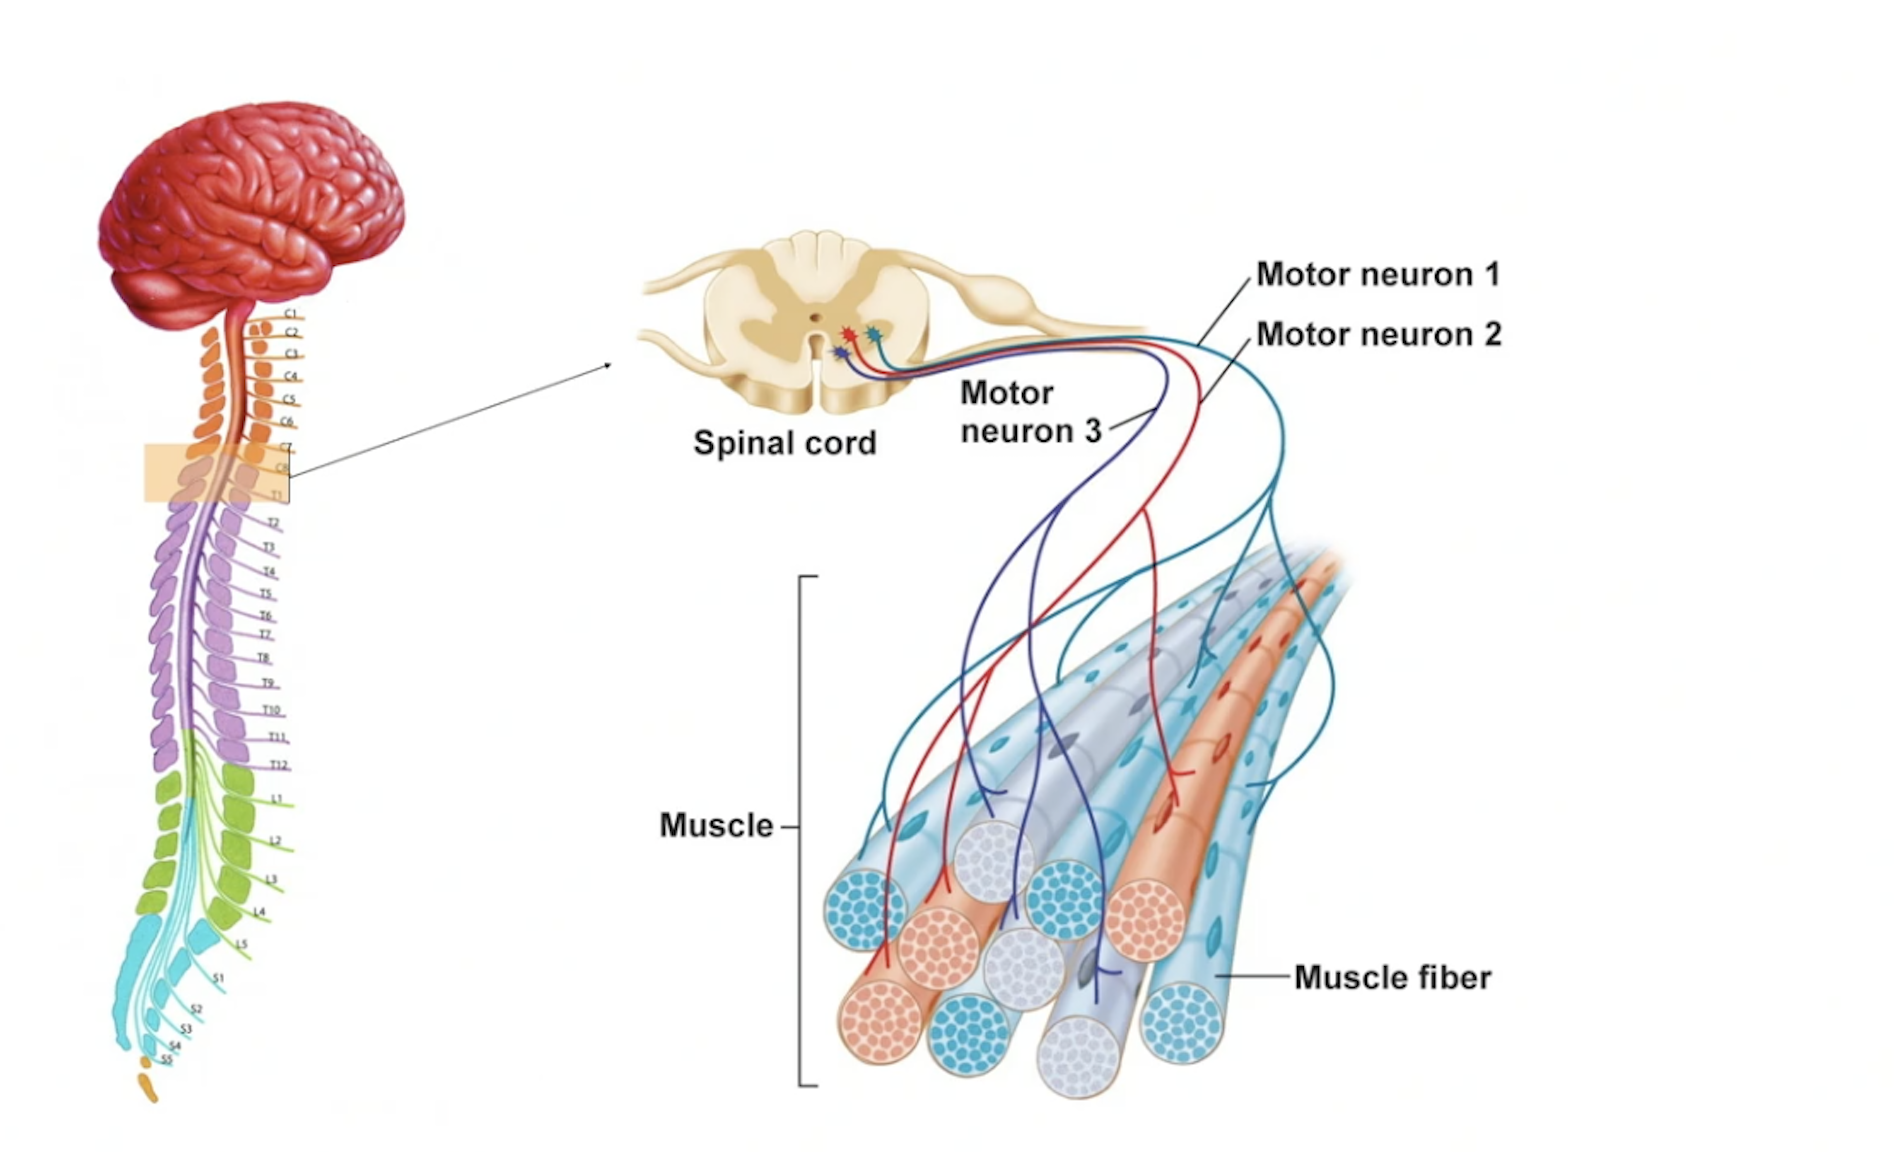 Motorneuroner från hjärna till muskelfiber